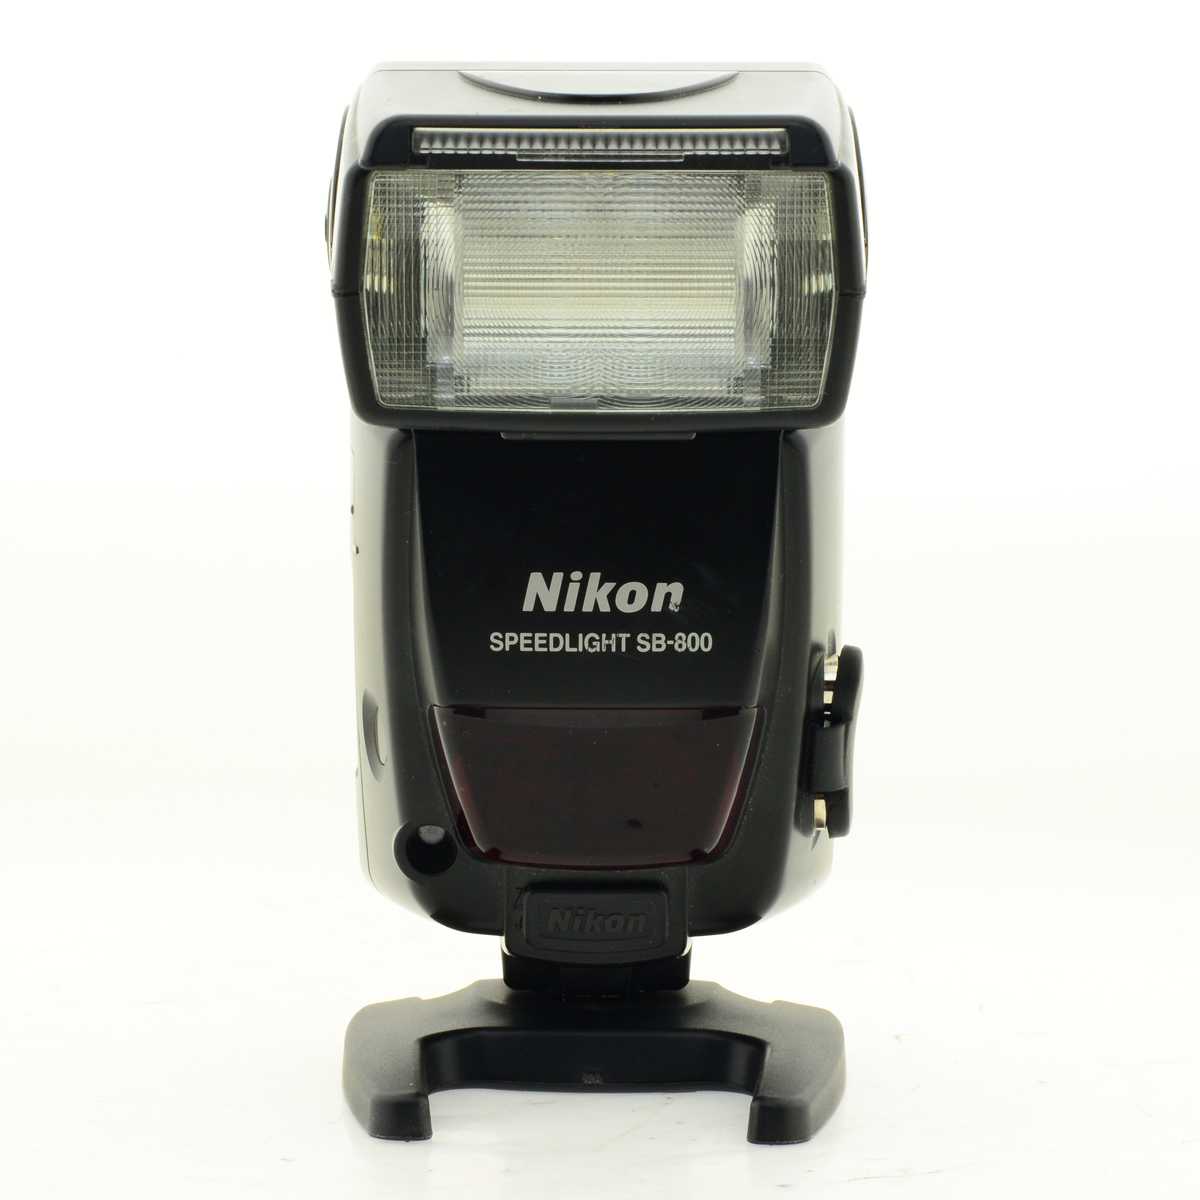 Nikon speedlight sb-800 купить по акционной цене , отзывы и обзоры.